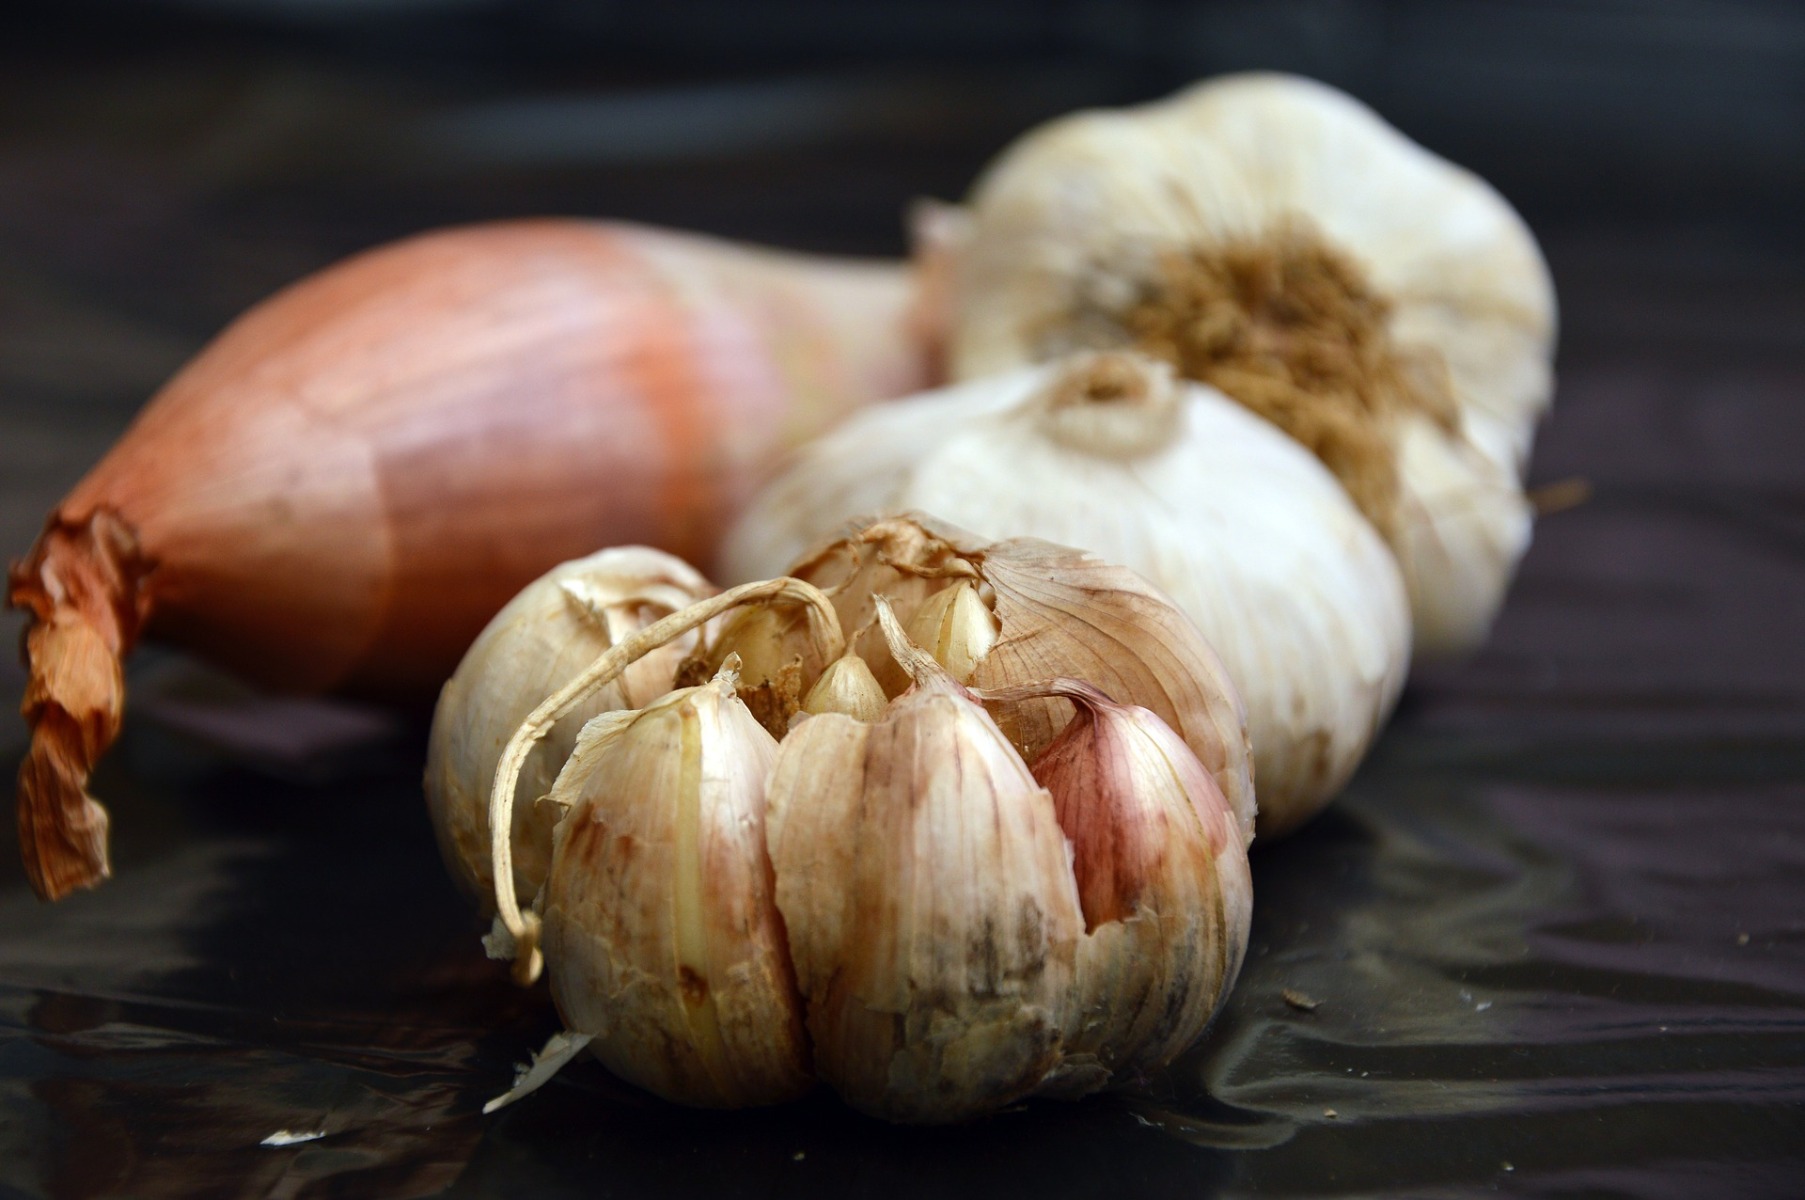 garlic and onions: Also containing prebiotic fiber